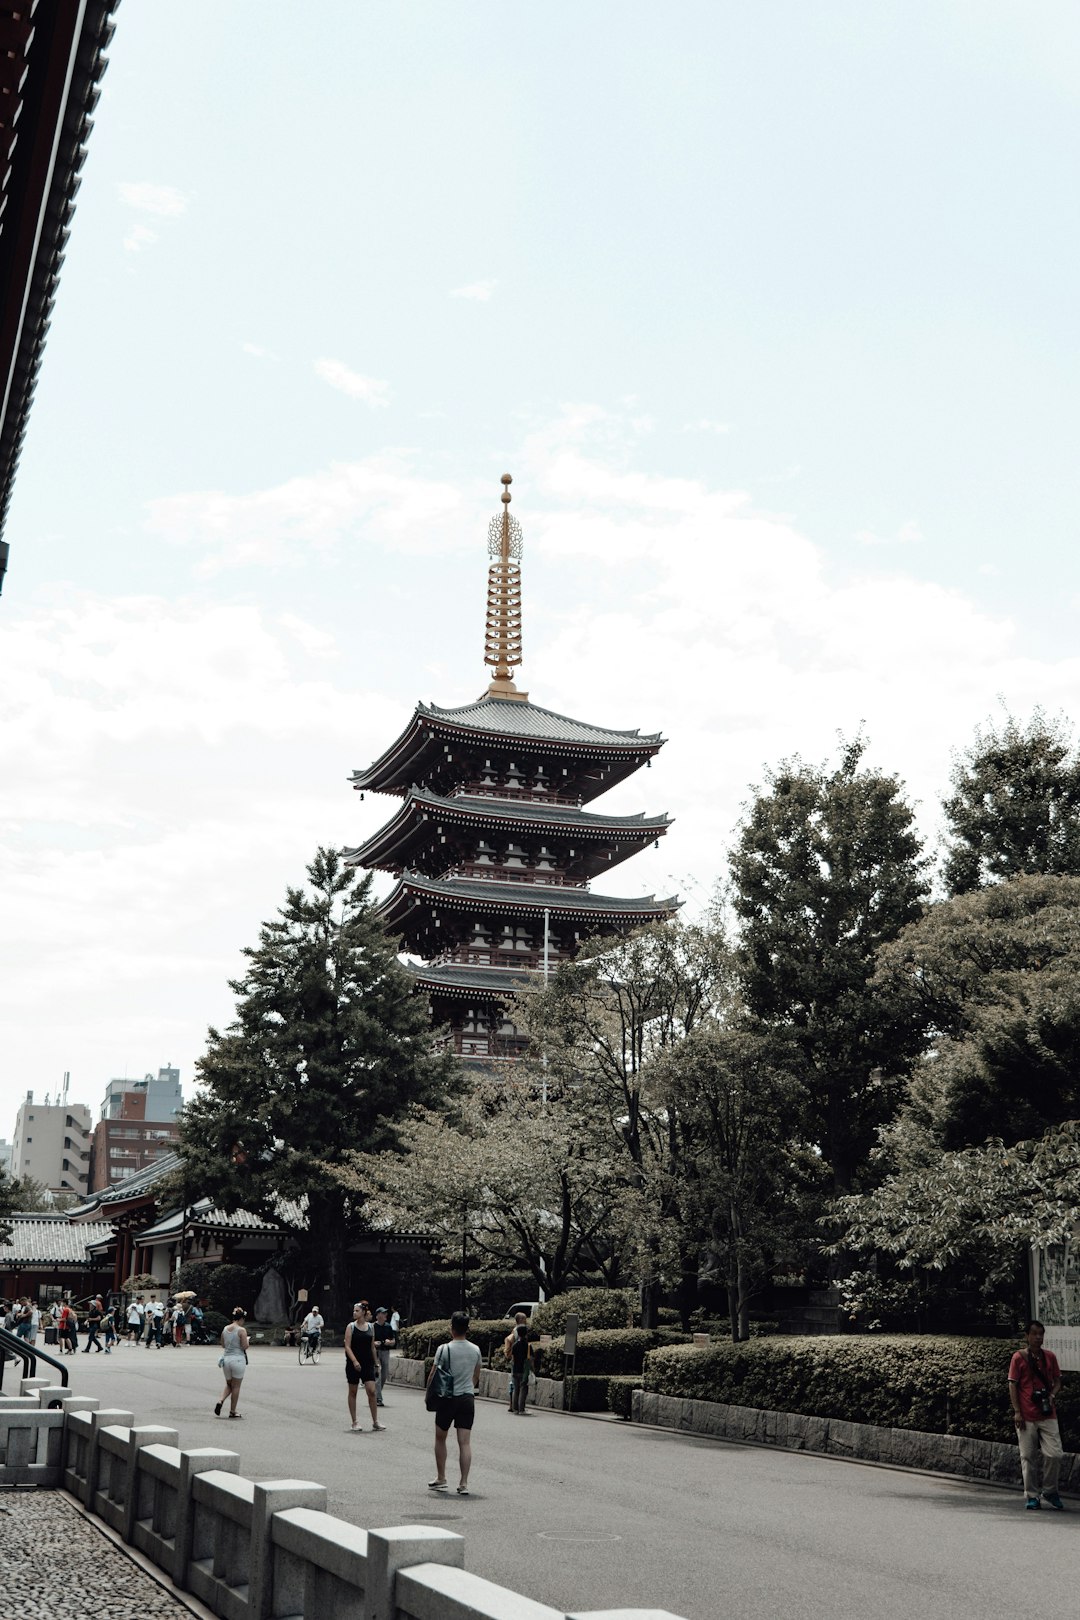 Pagoda photo spot Tokio Arakurayama Sengen Park